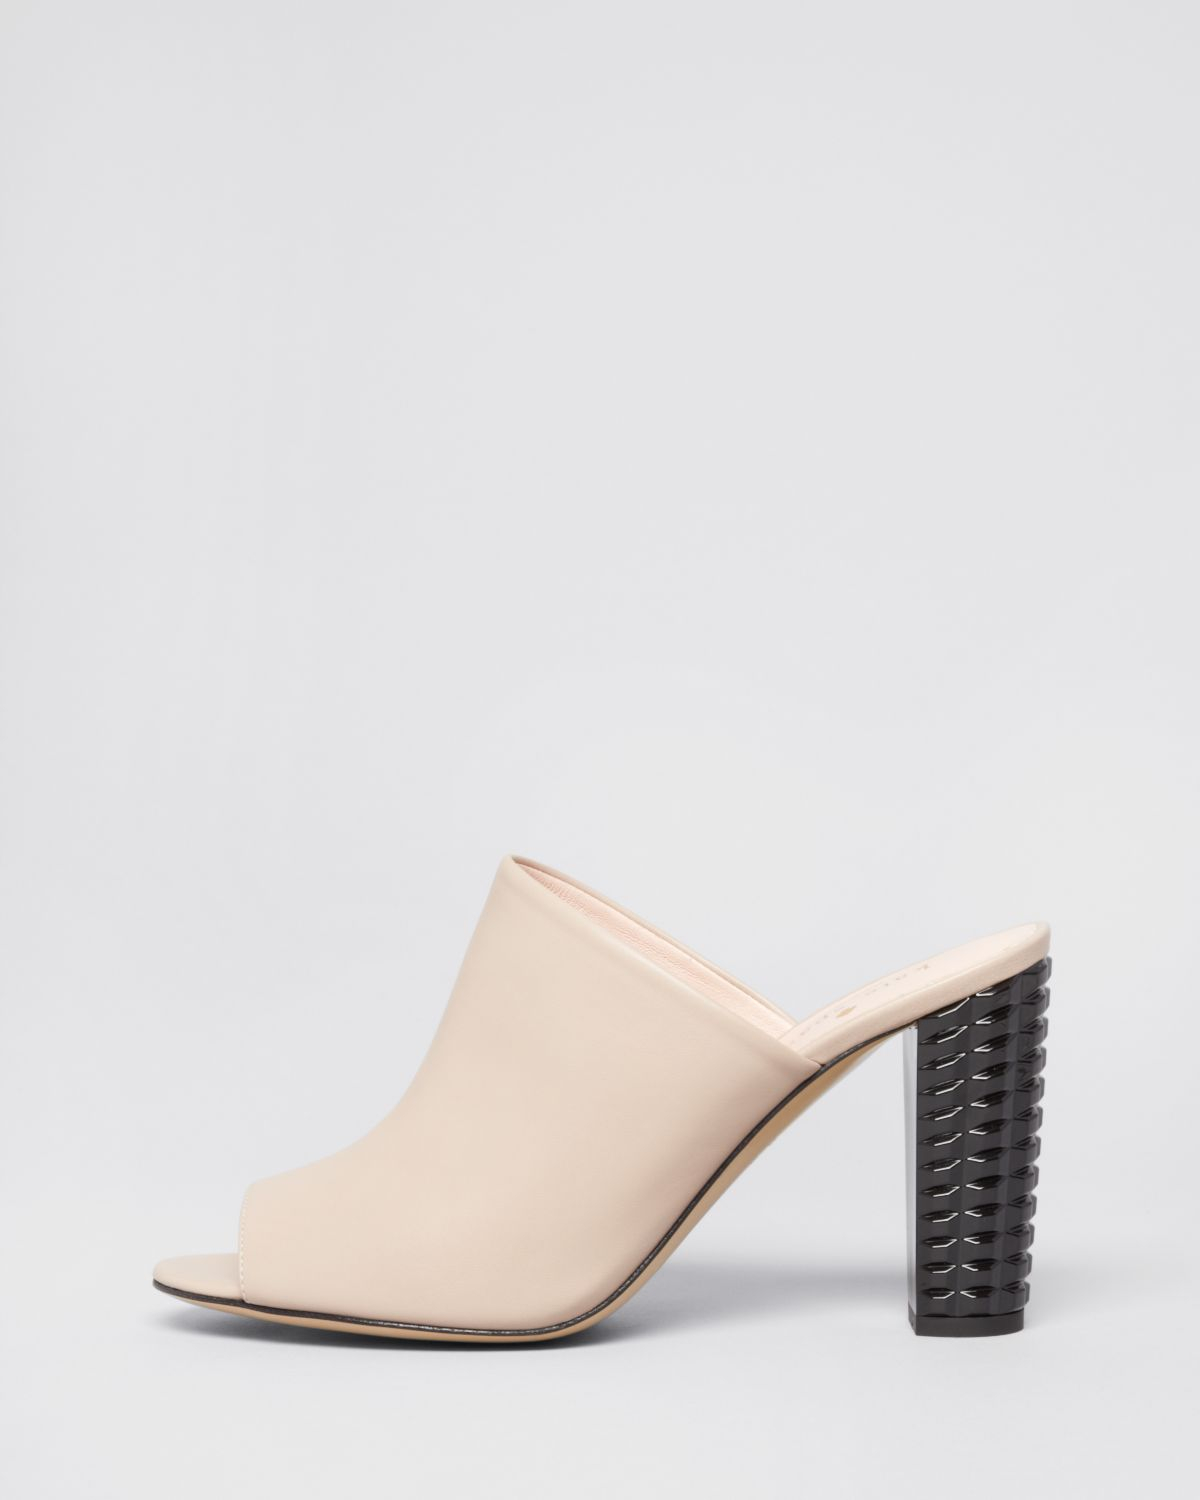 slide mule heels